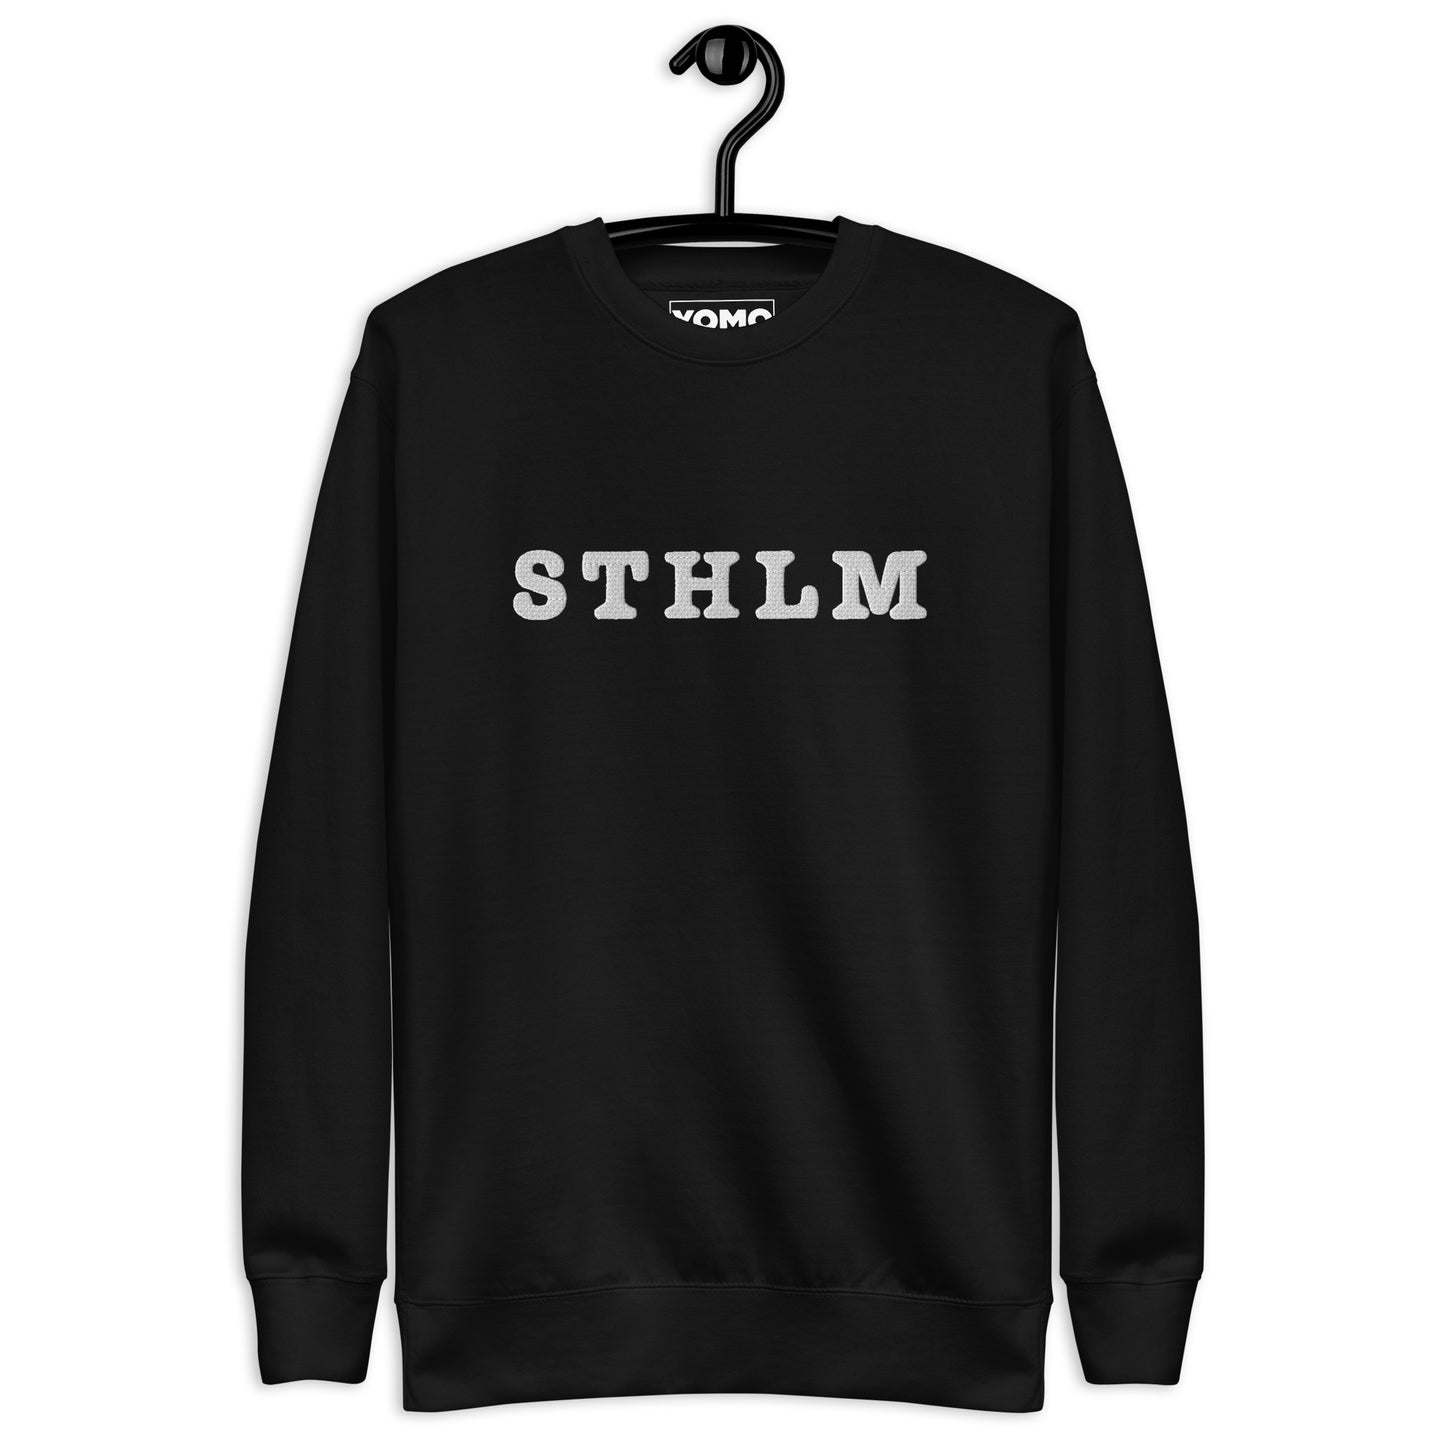 STHLM - Premium Unisex Sweatshirt/Collegetröja med vit brodyr - 4 färger